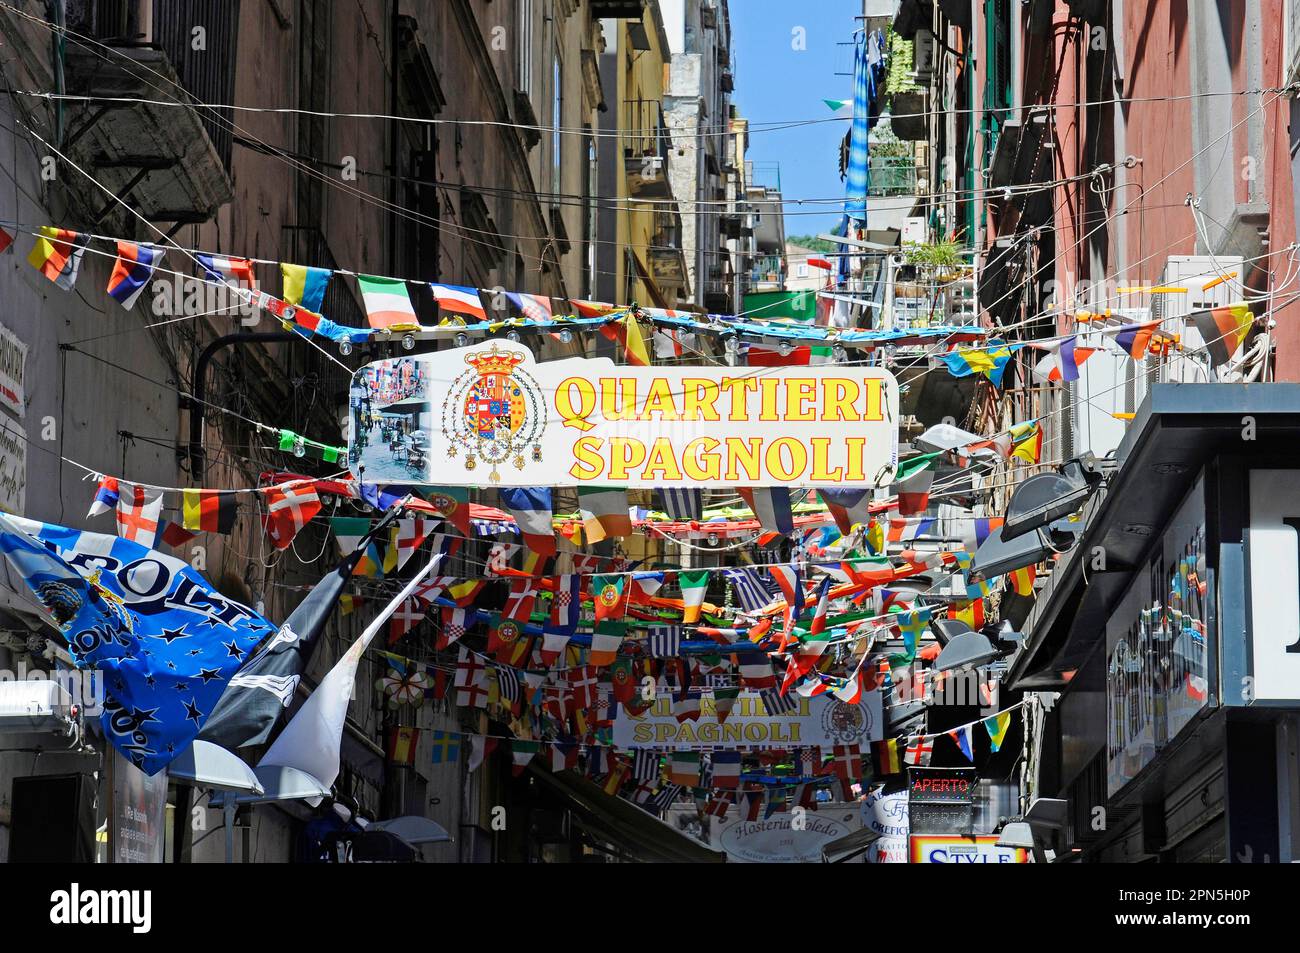 Bandiere colorate, vicolo, quartieri Spagnoli, quartiere spagnolo, quartiere, Napoli, Campania, Italia Foto Stock